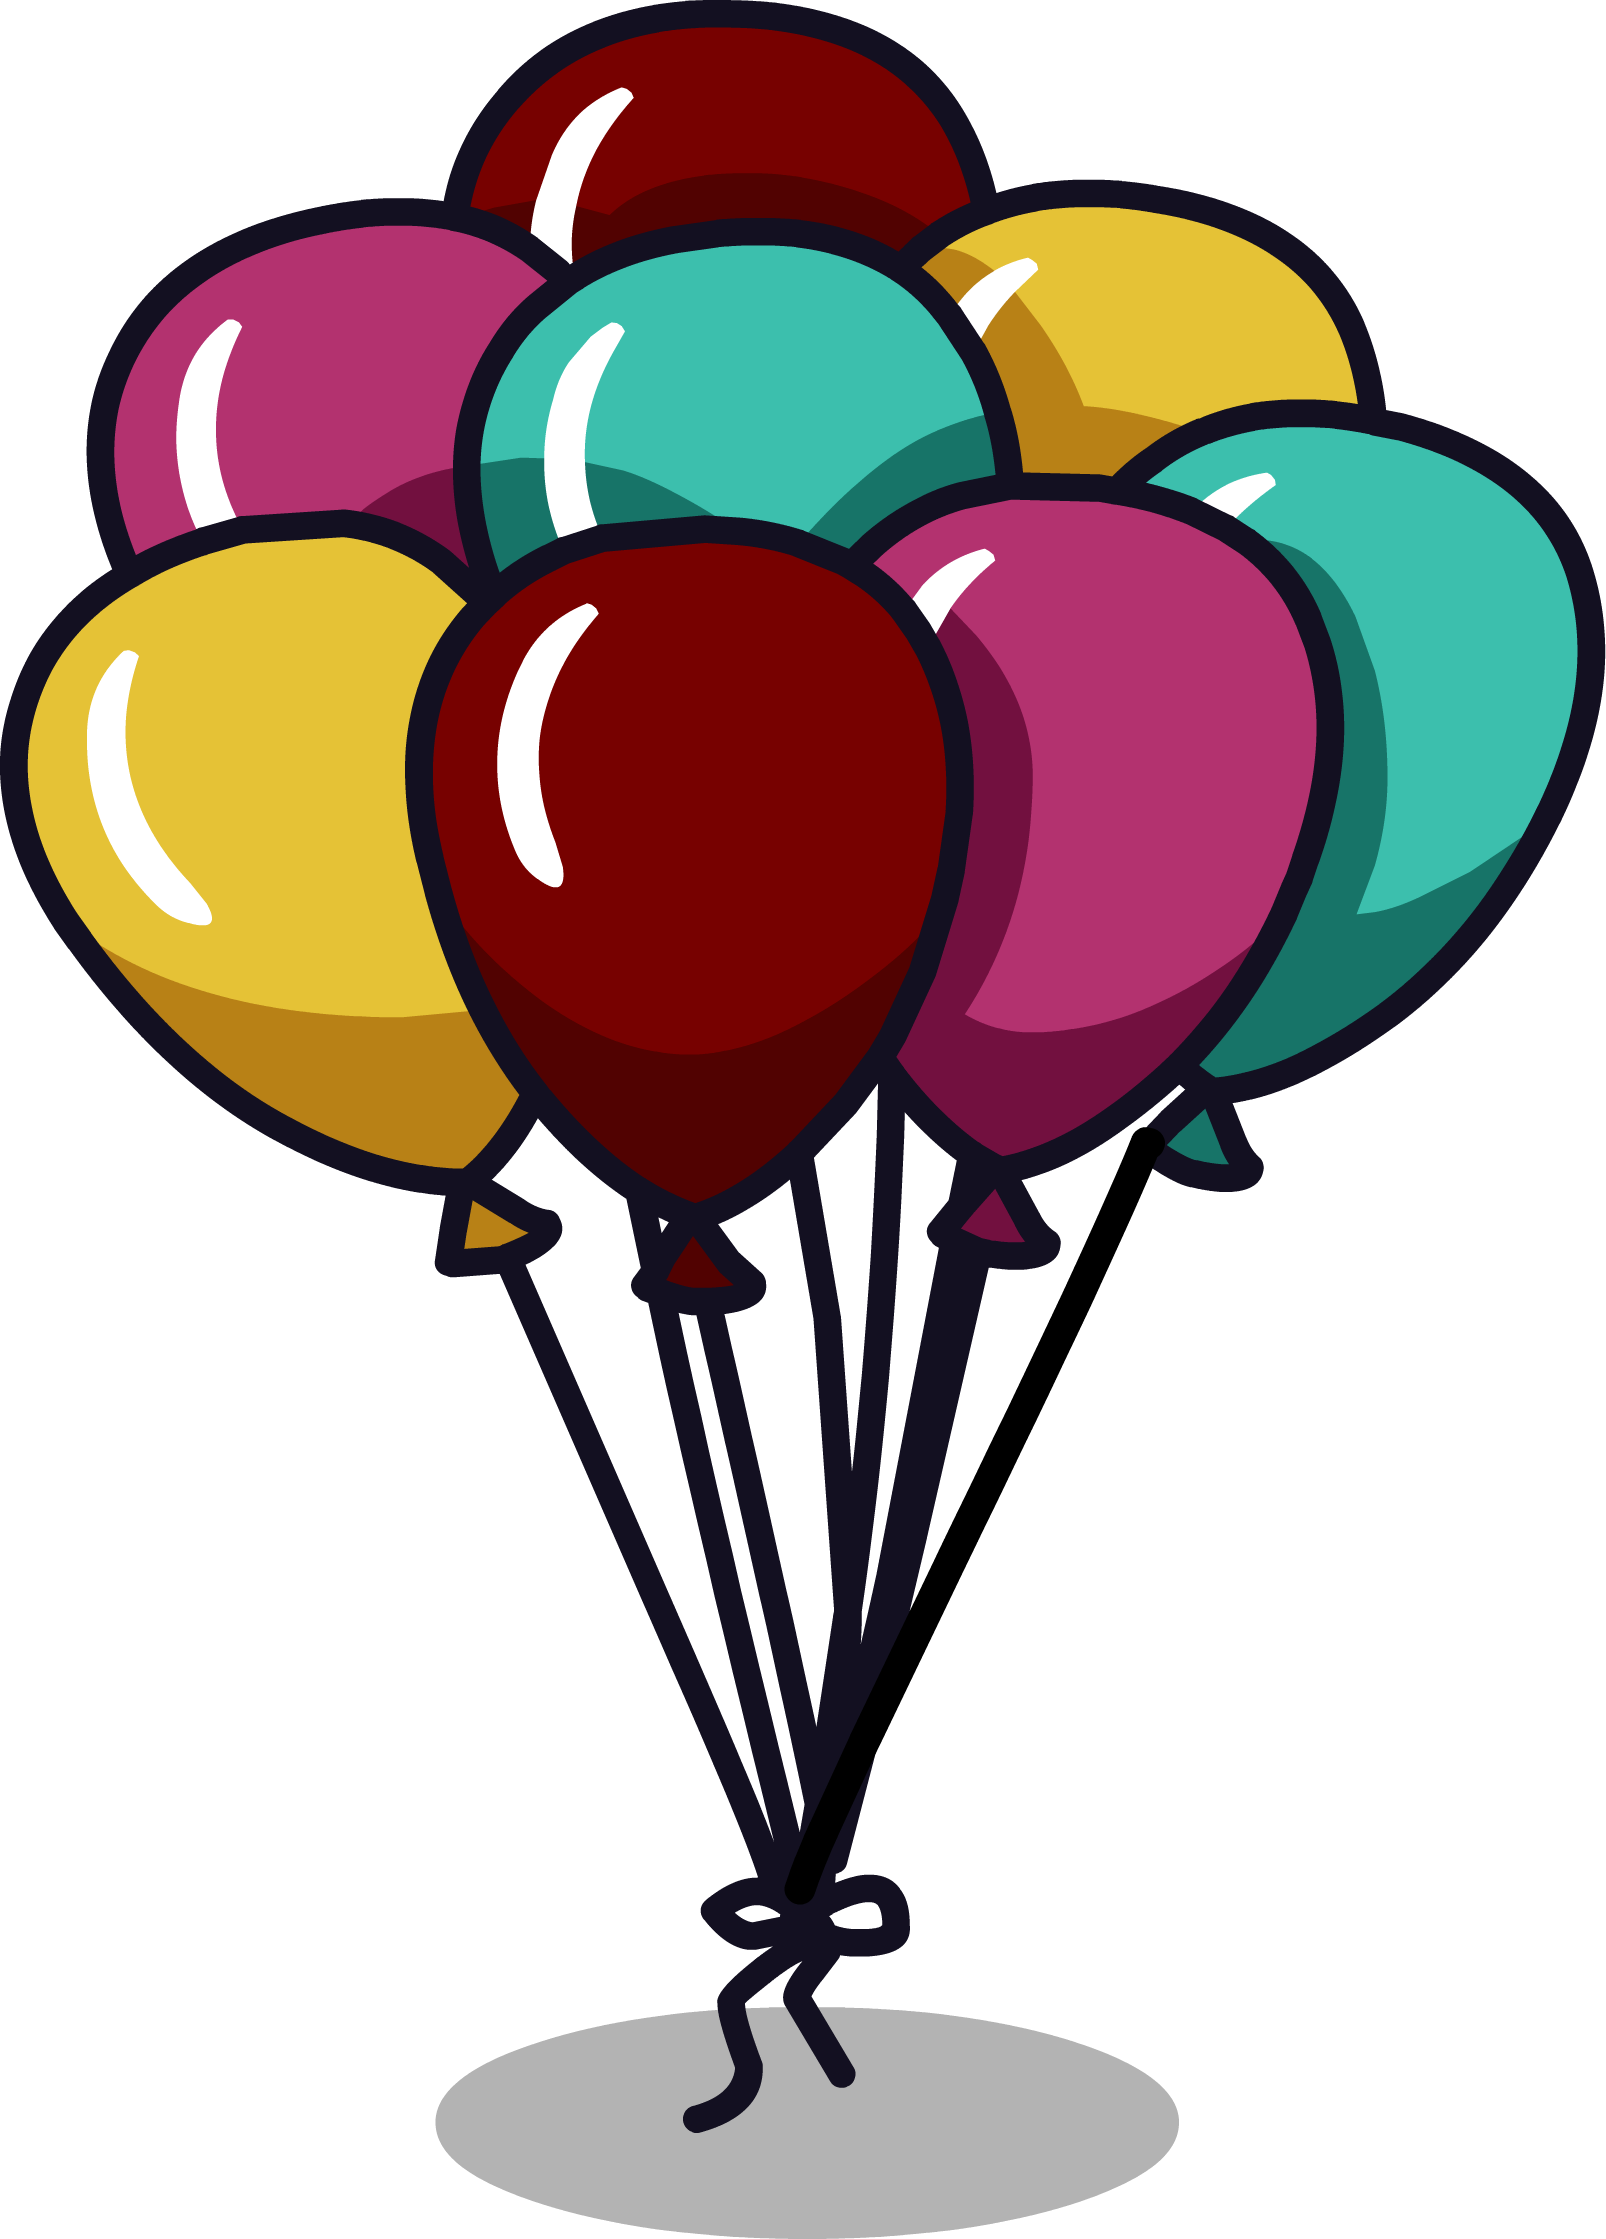 Balloon Bunch - Club Penguin Balloons (1606x2239)